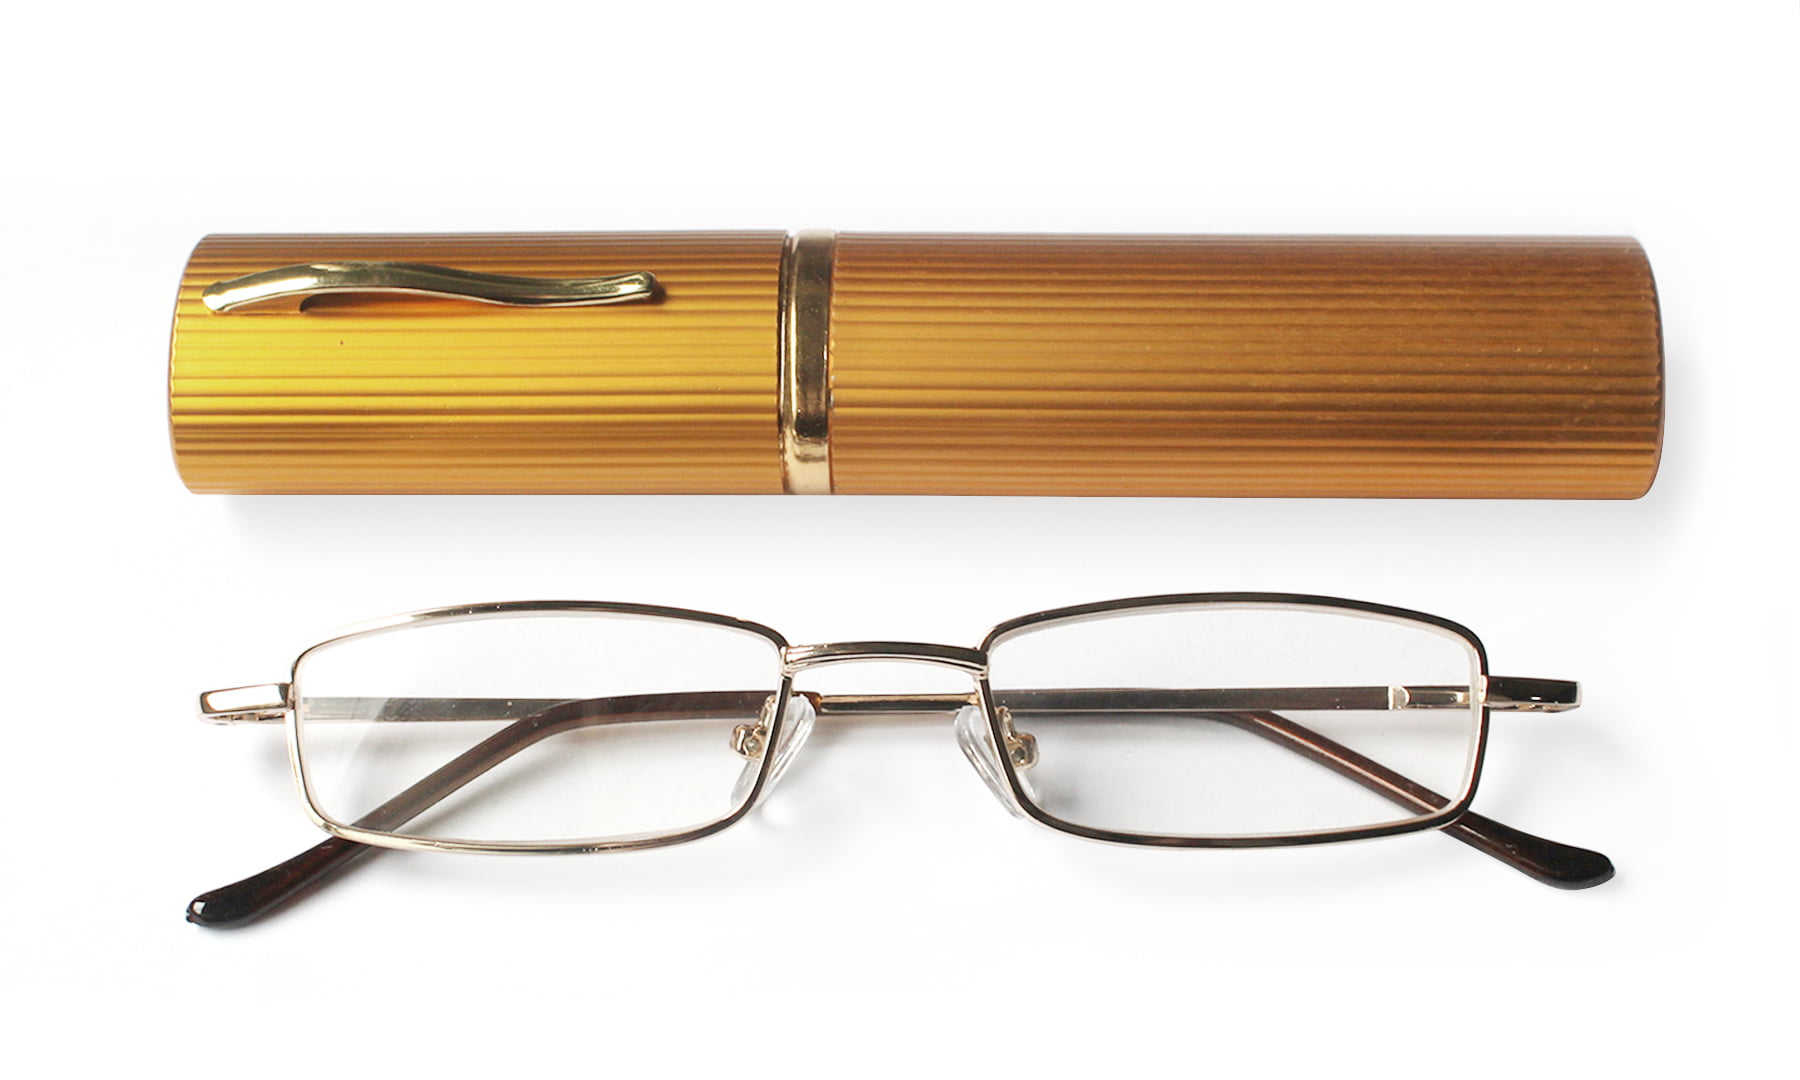 Outdoor Gunmetal Eyeglasses Full Frame Reading Glasses Spectacles Eyewear Reader Magnifier 1.00 Pocket Clip Pen Tube Case